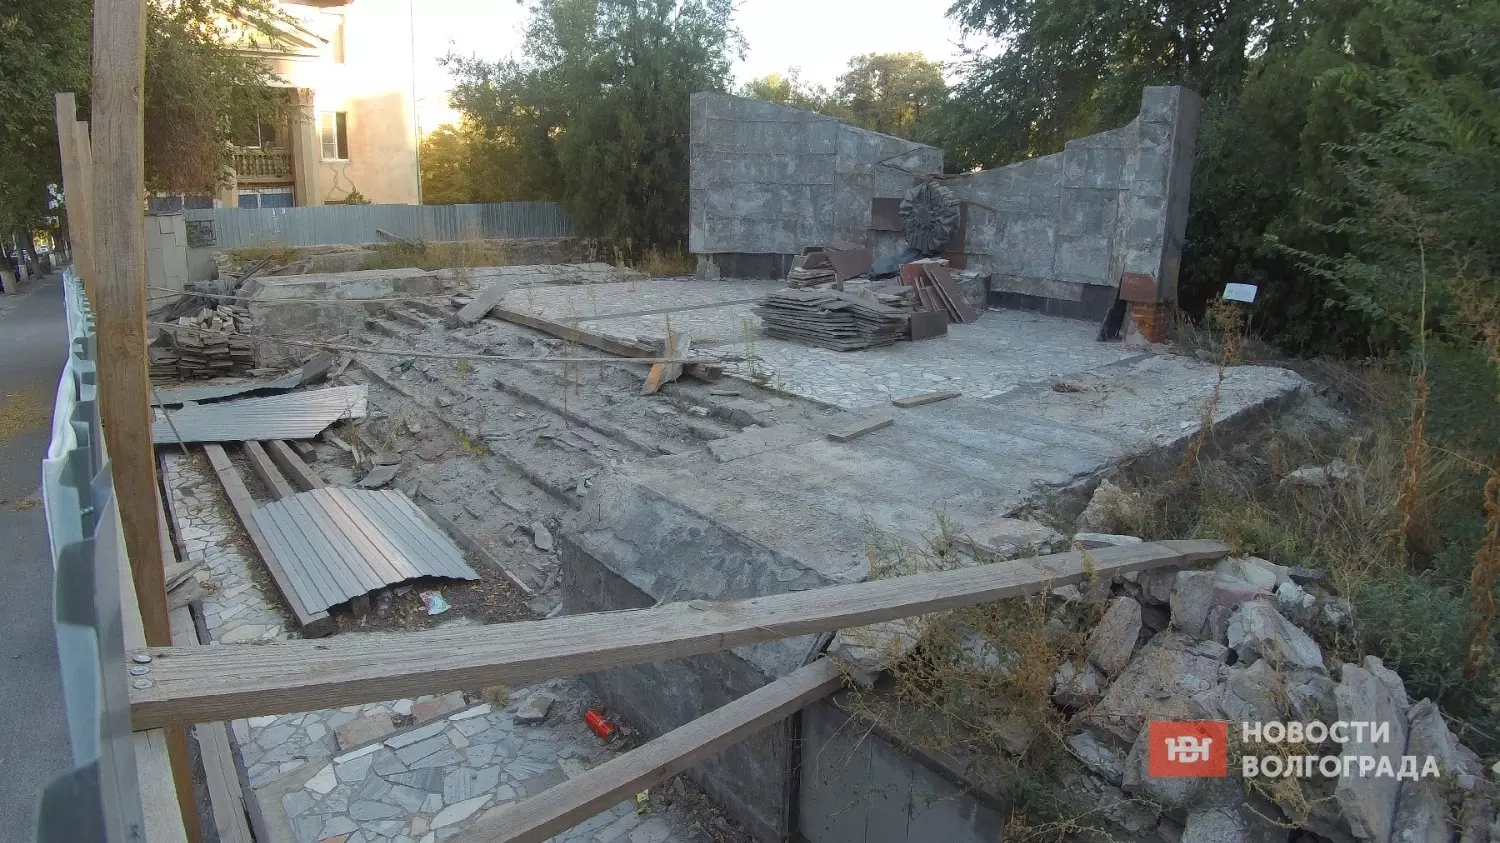 В таком состоянии братская могила на проспекте Металлургов в Волгограде находится уже больше года